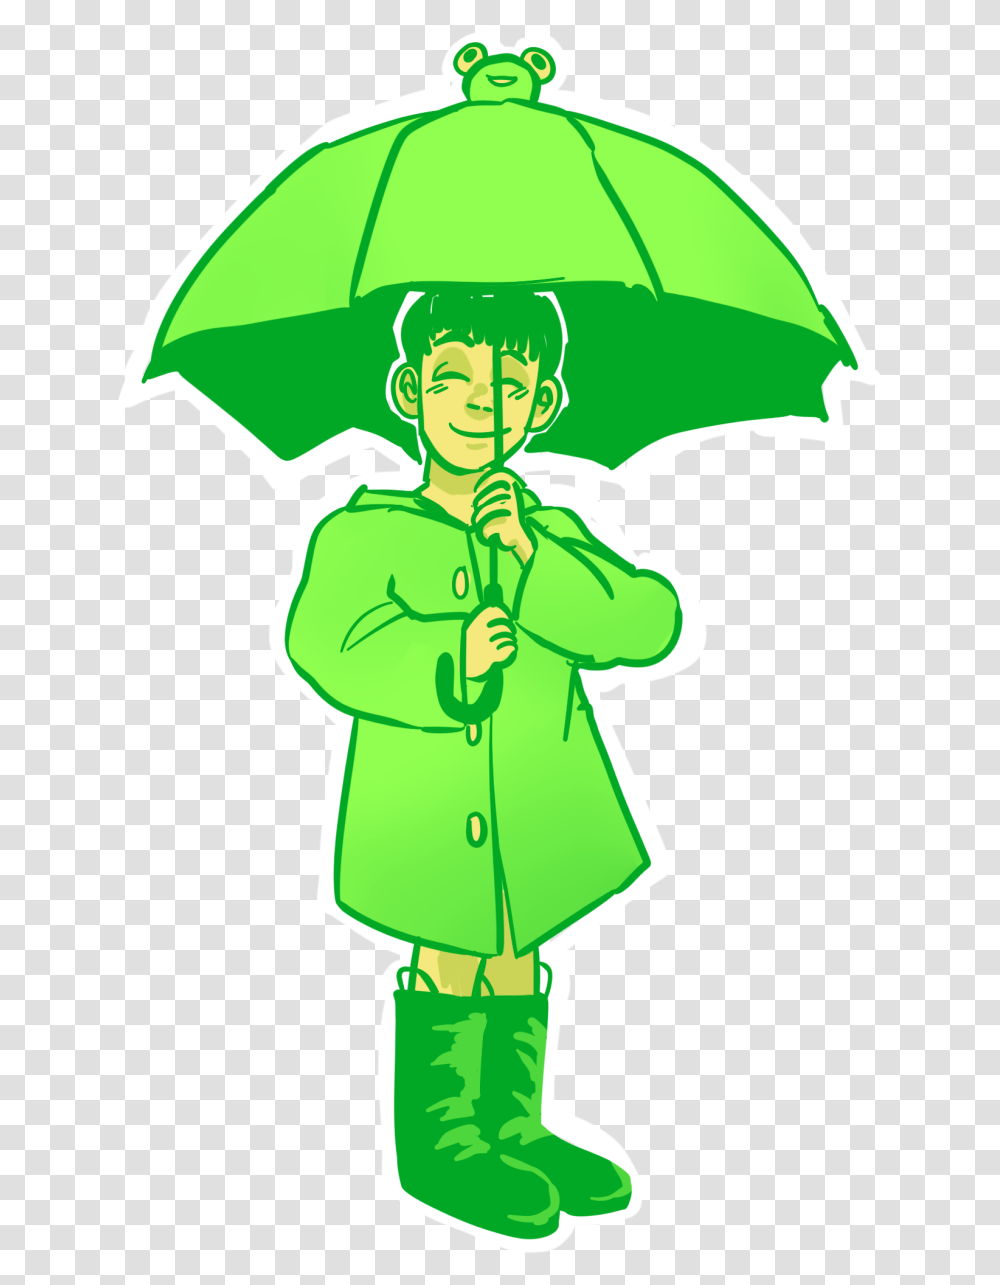 The Frog Umbrellaok So I Own A Frog Umbrella Mob Psycho Umbrella Frog, Apparel, Coat, Raincoat Transparent Png